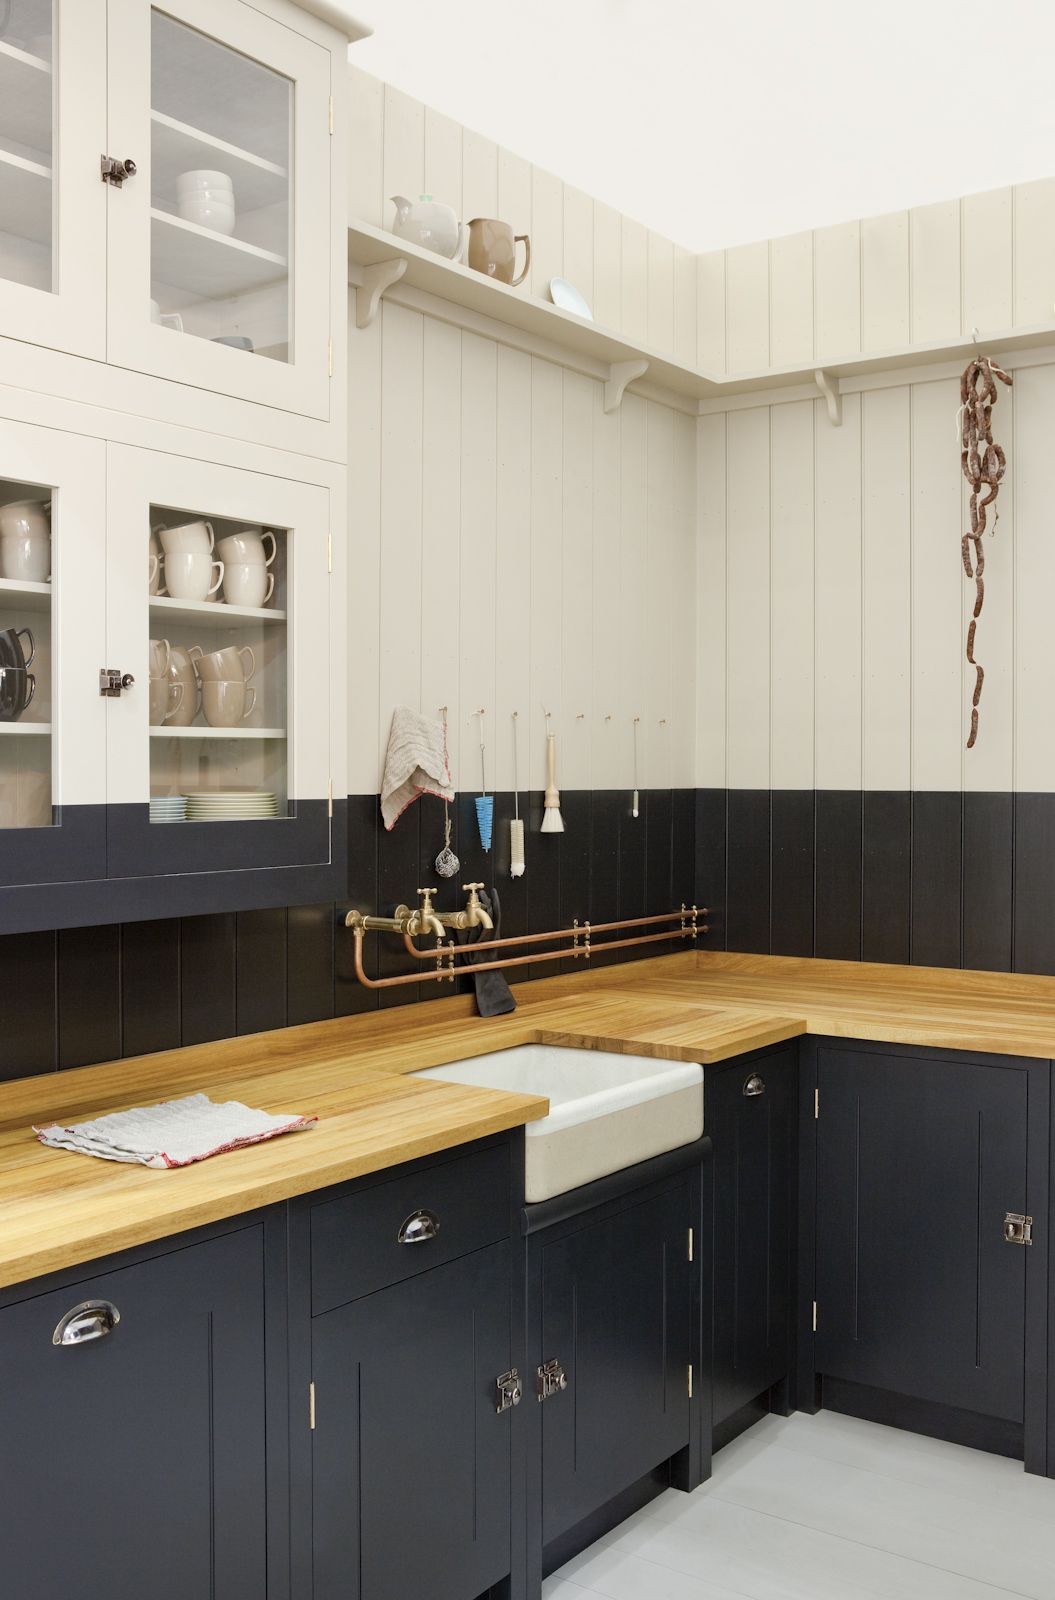 šviesus smėlio spalvos virtuvės interjeras klasikiniu stiliumi